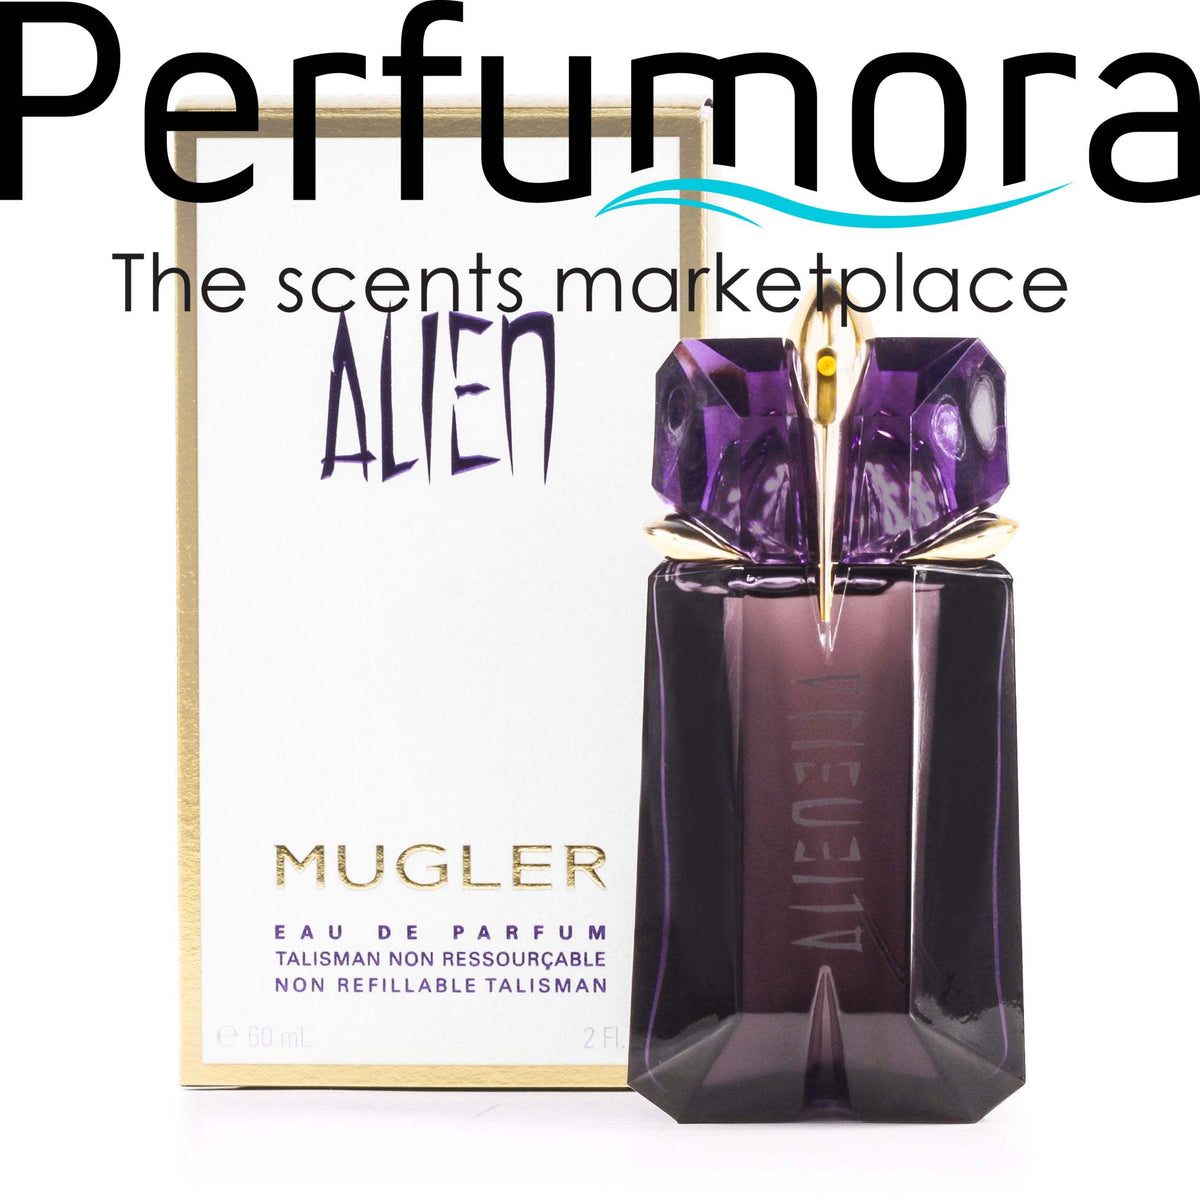 Alien Non Refillable Eau de Parfum Spray for Women by Thierry Mugler